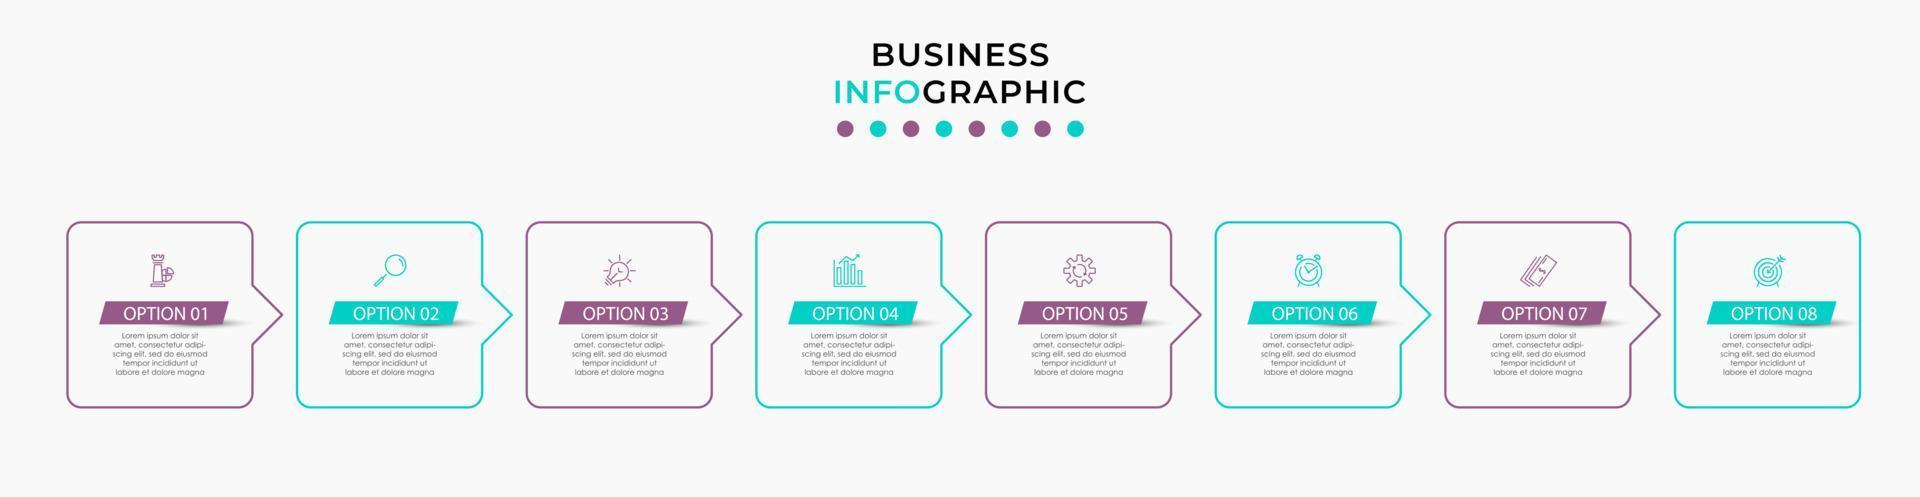 Vektor-Infografik-Design-Geschäftsvorlage mit Symbolen und 8 Optionen oder Schritten. kann für Prozessdiagramme, Präsentationen, Workflow-Layouts, Banner, Flussdiagramme und Infografiken verwendet werden vektor